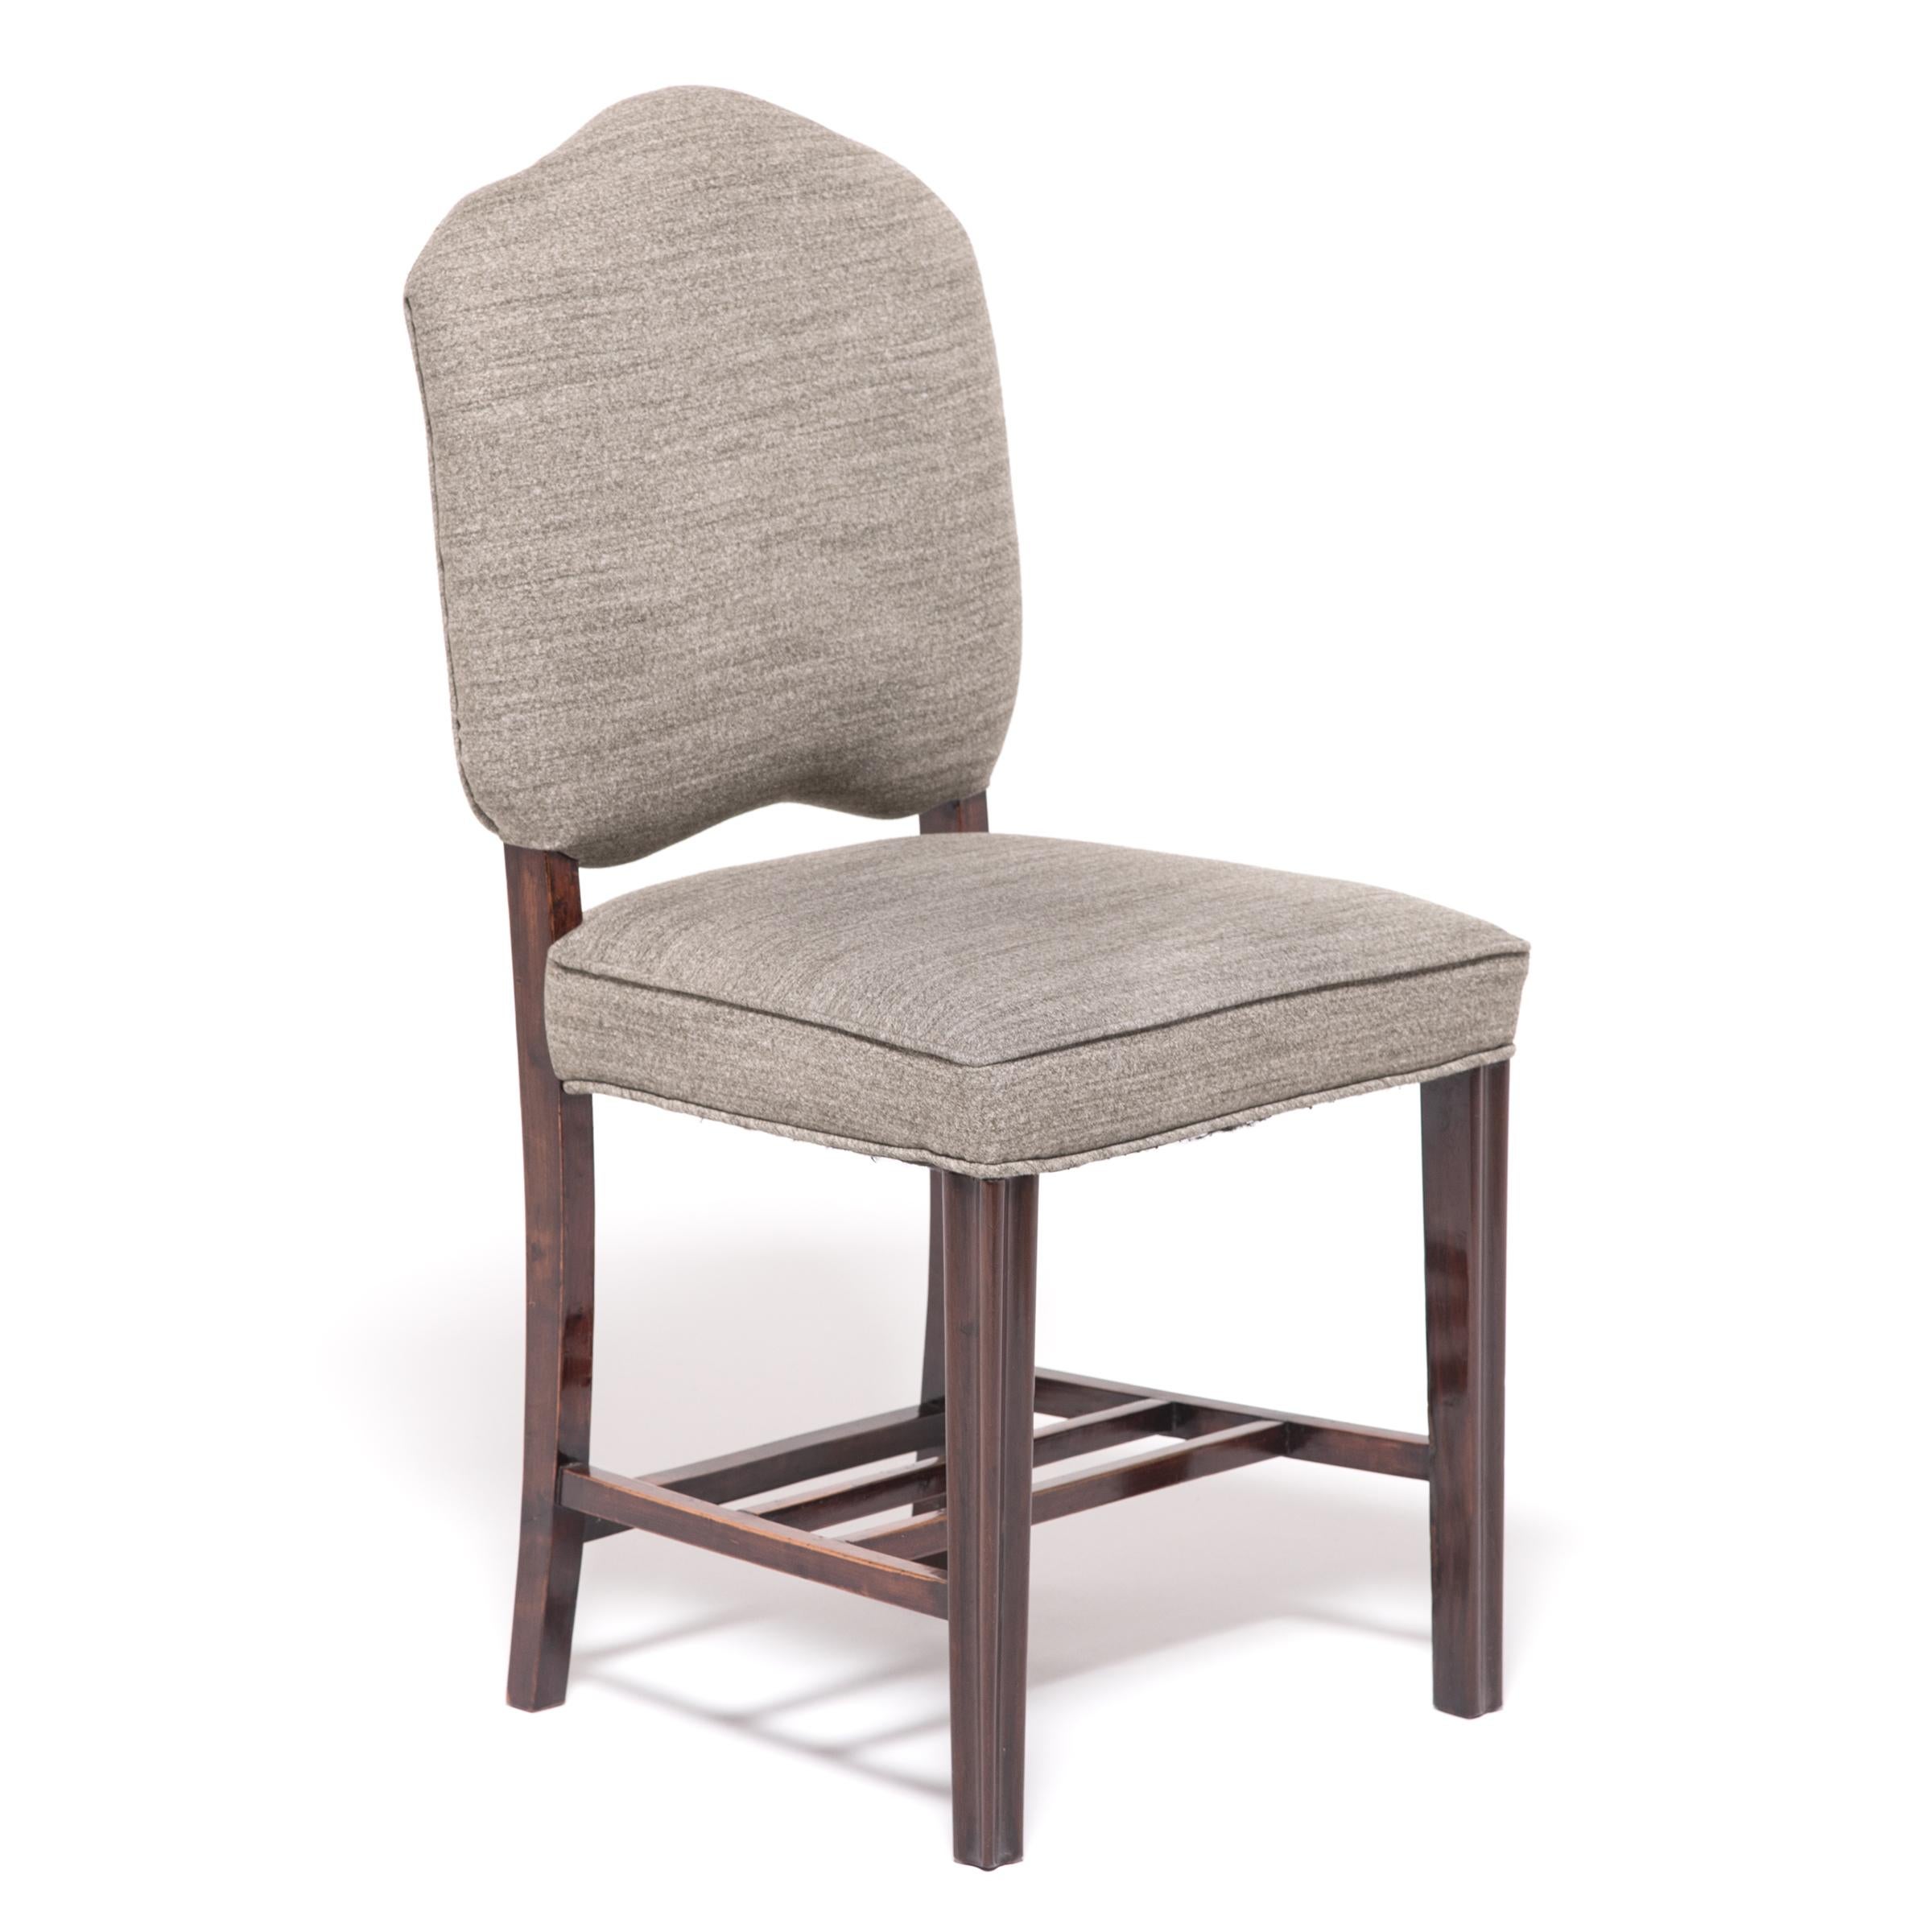 Diese einzigartigen Stühle, die in den 1920er Jahren hergestellt wurden, um den weltweiten Hunger nach Art Déco zu stillen, verbinden den stromlinienförmigen Stil der Epoche mit einer klassischen chinesischen Ästhetik. Die schönen Hartholzrahmen mit